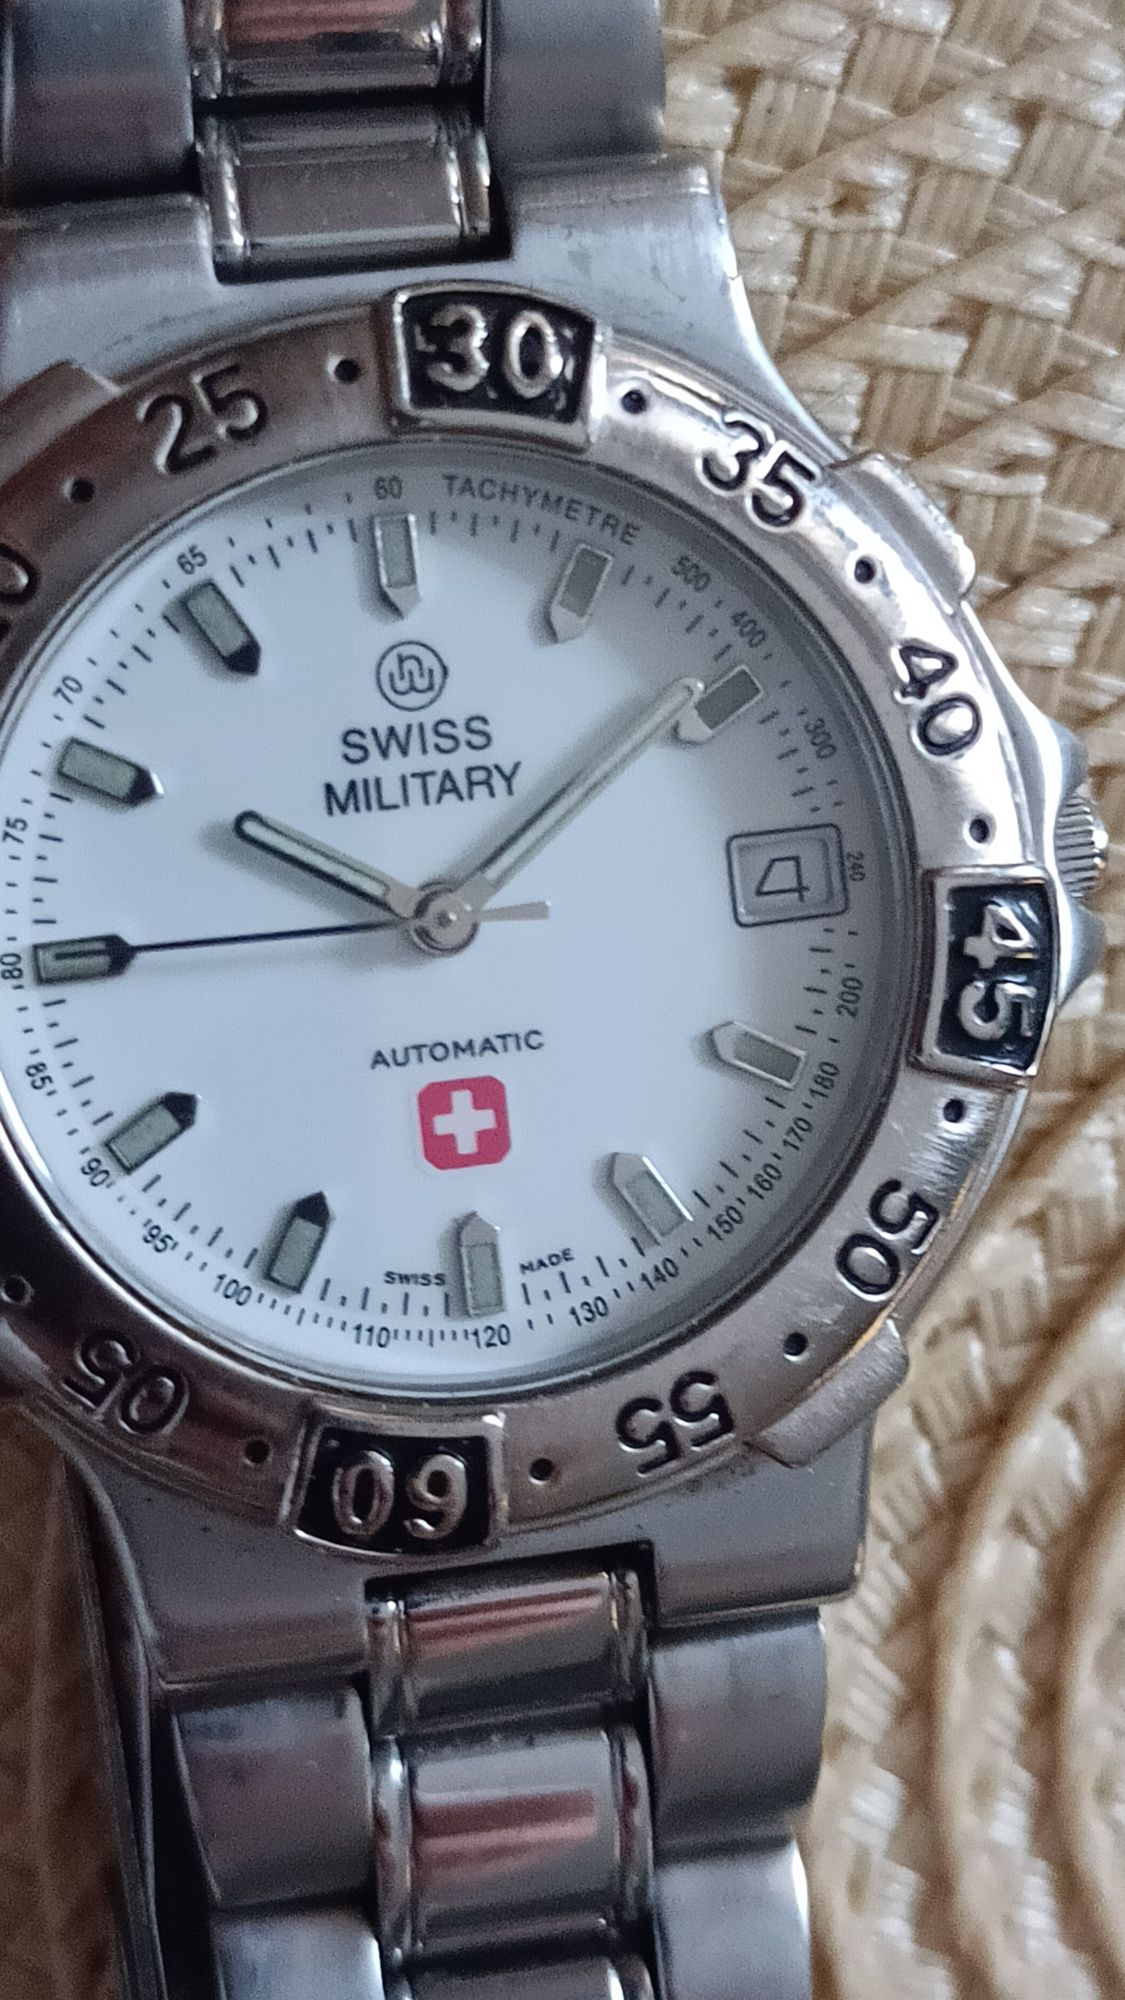 Swiss Military oryginalny szwajcarski zegarek automat rzadki model